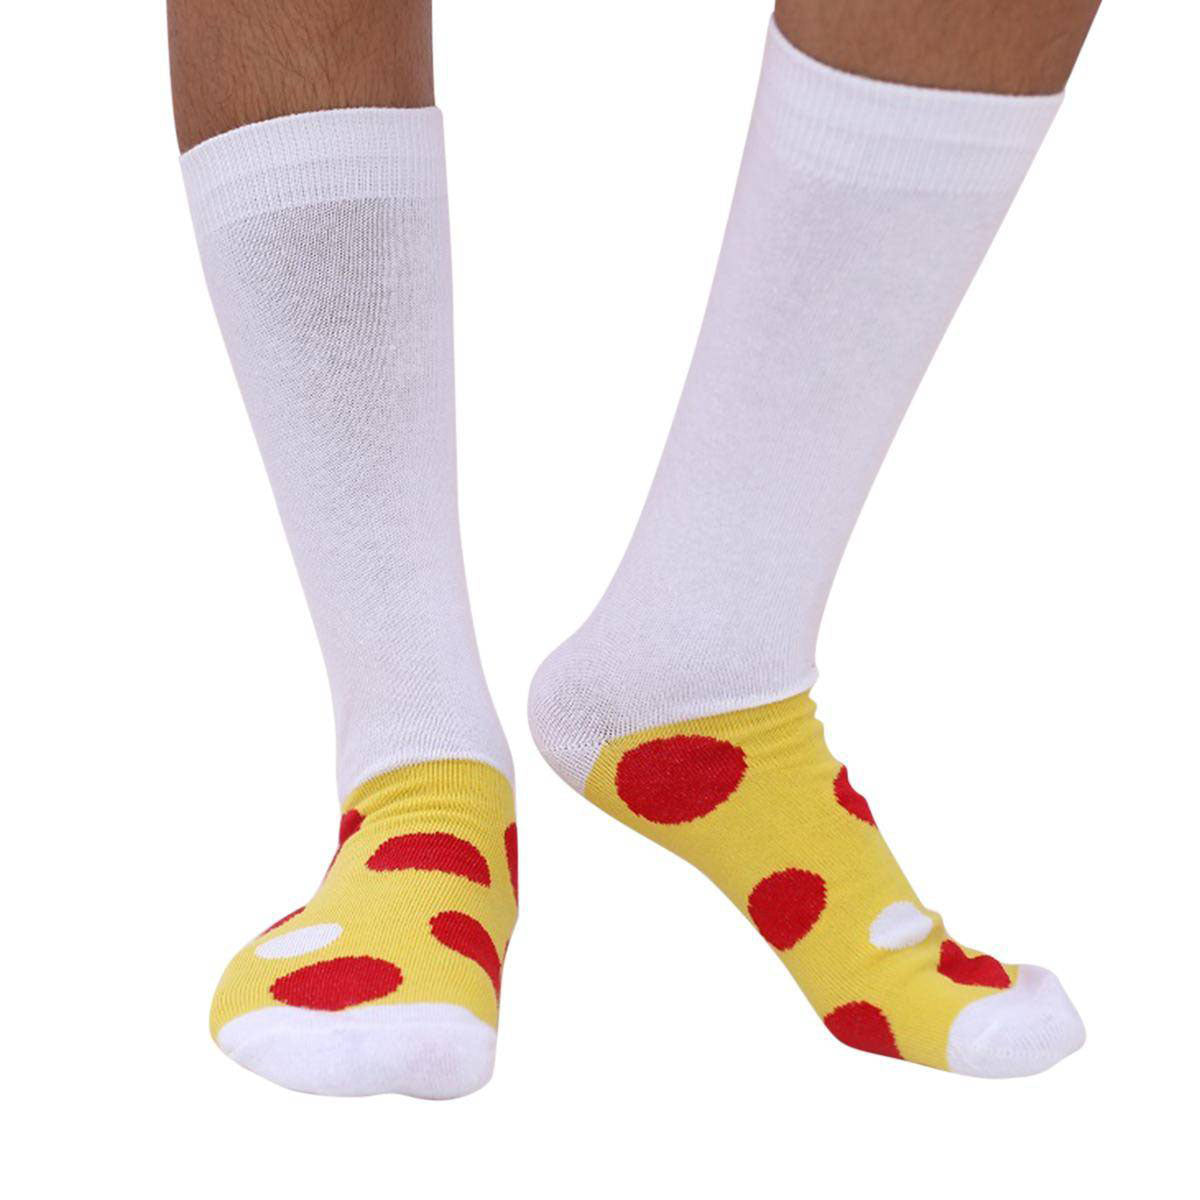 Cotton Premium Long Socks for Women